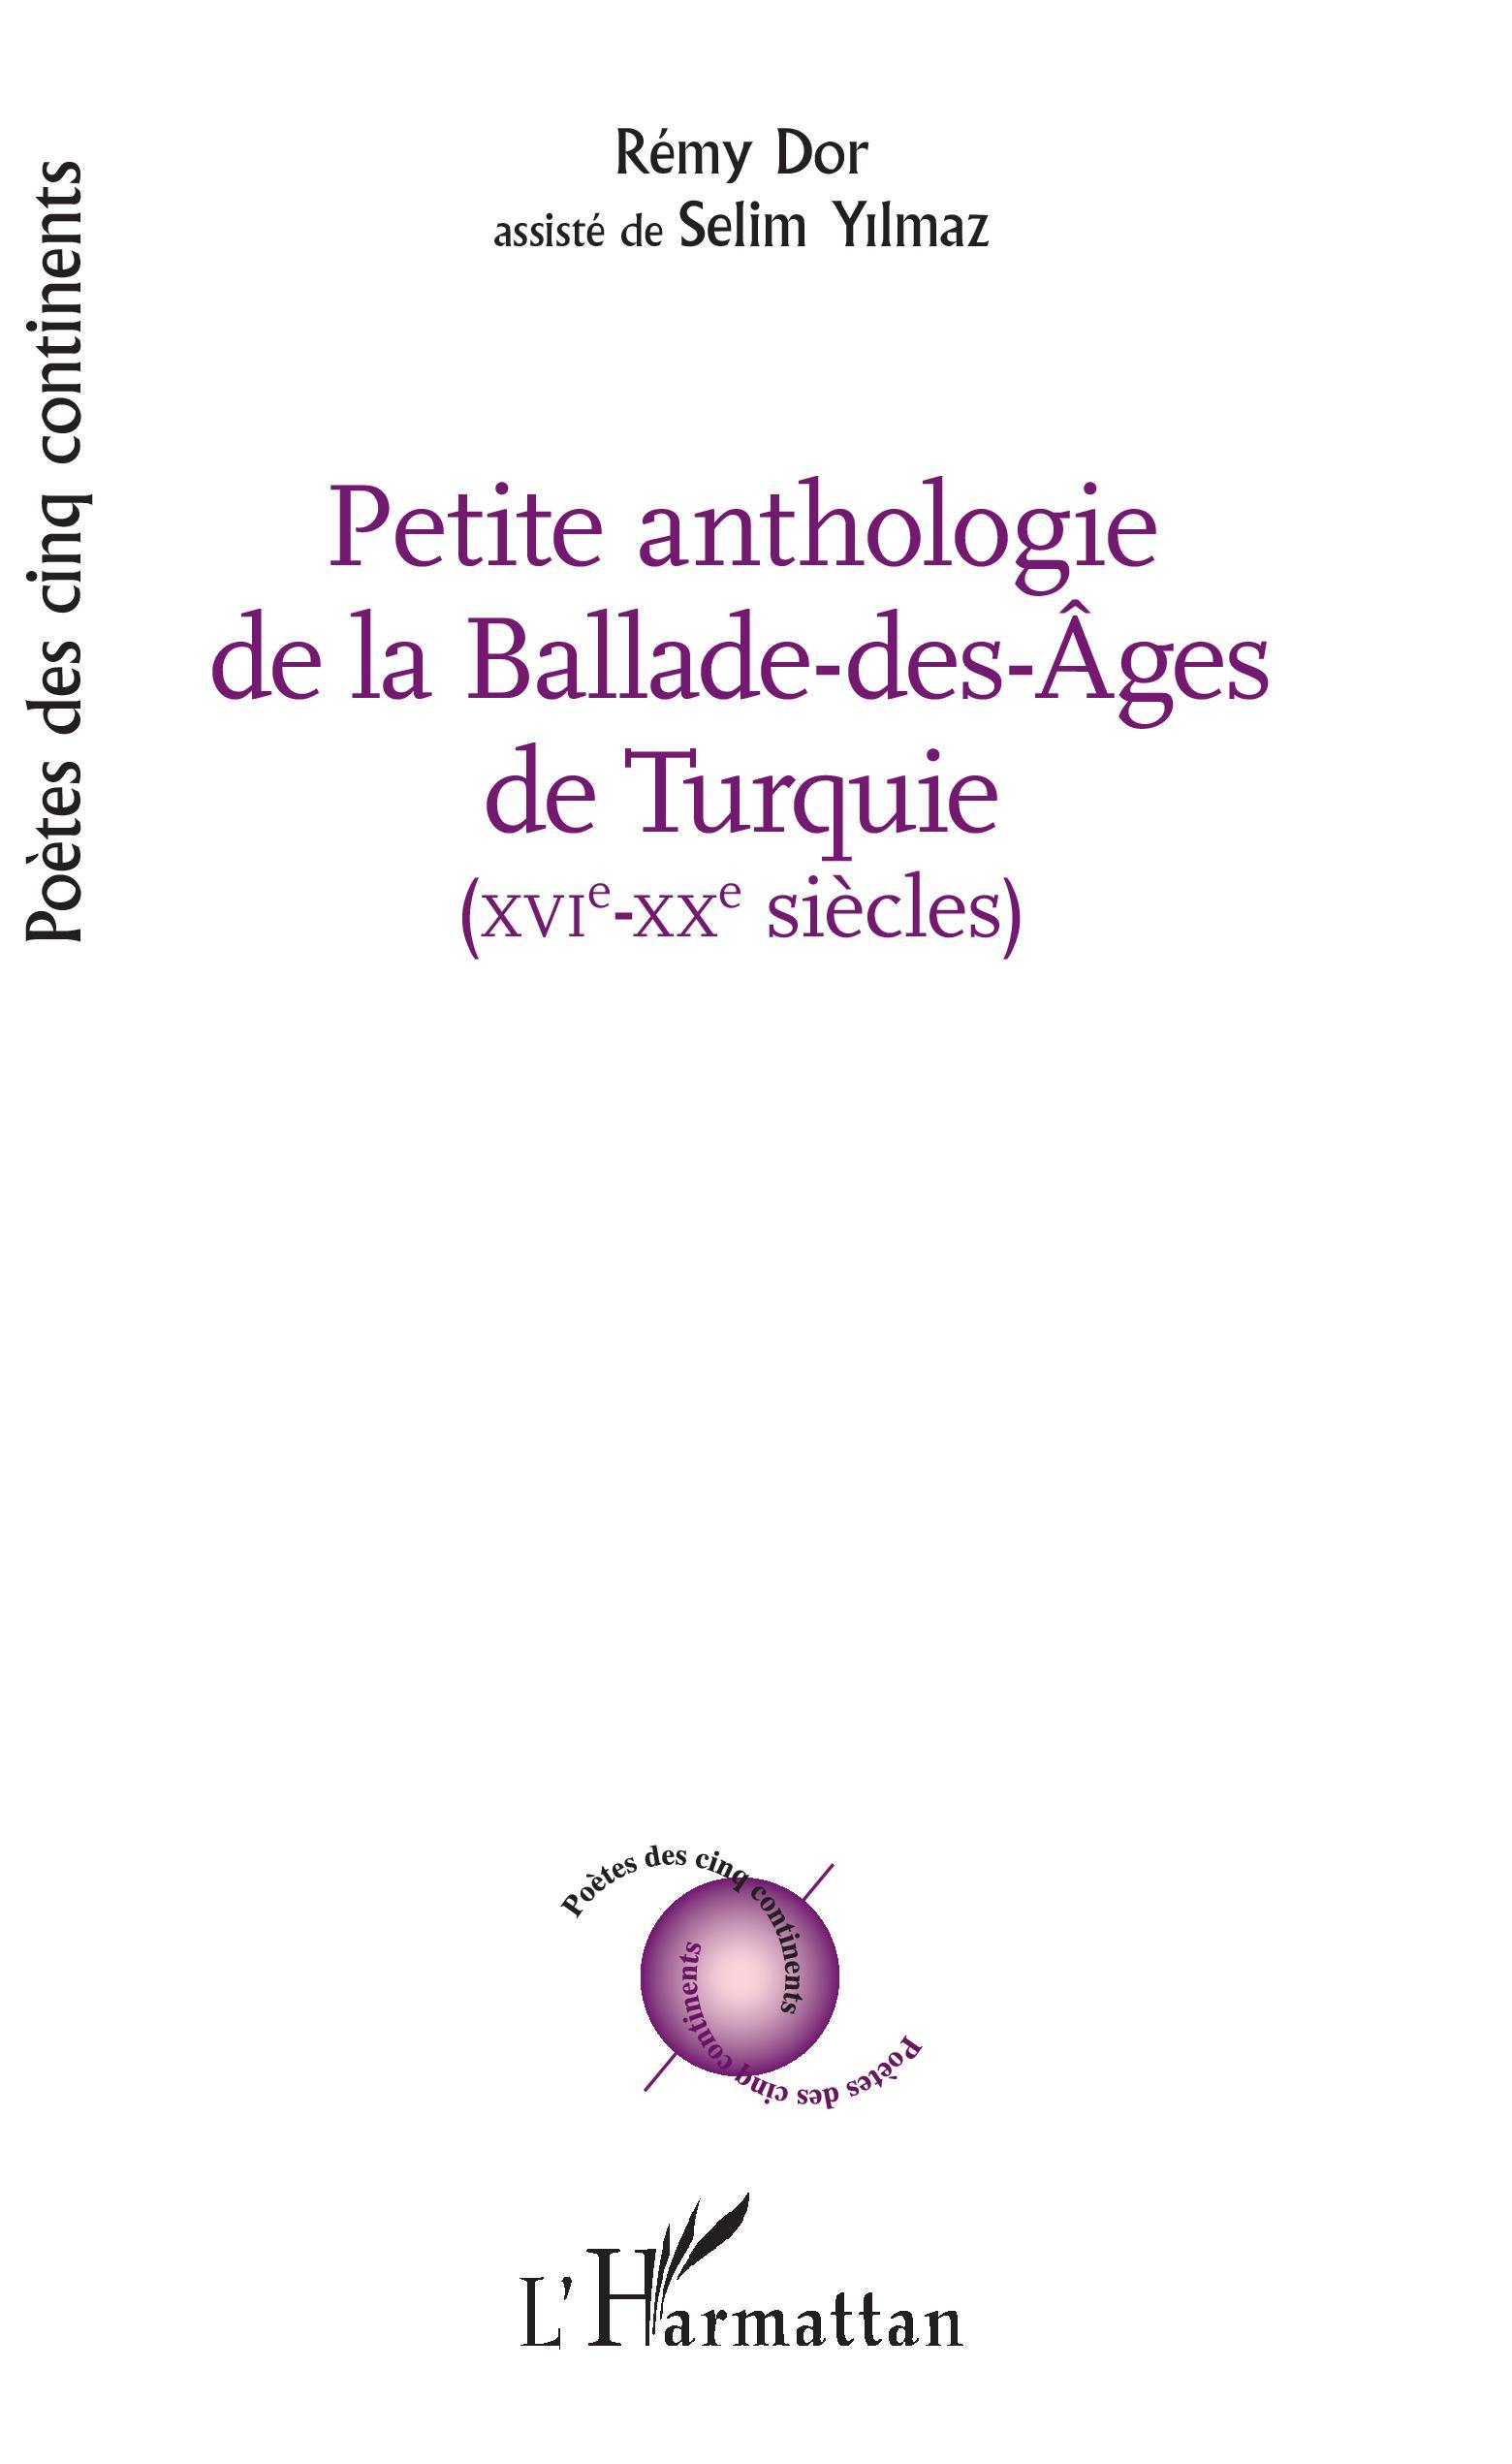 PETITE ANTHOLOGIE DE LA BALADE DES AGES DE TURQUIE, XVI - XX siècles - avec la collaboration de Selim Yilmaz (9782343146645-front-cover)